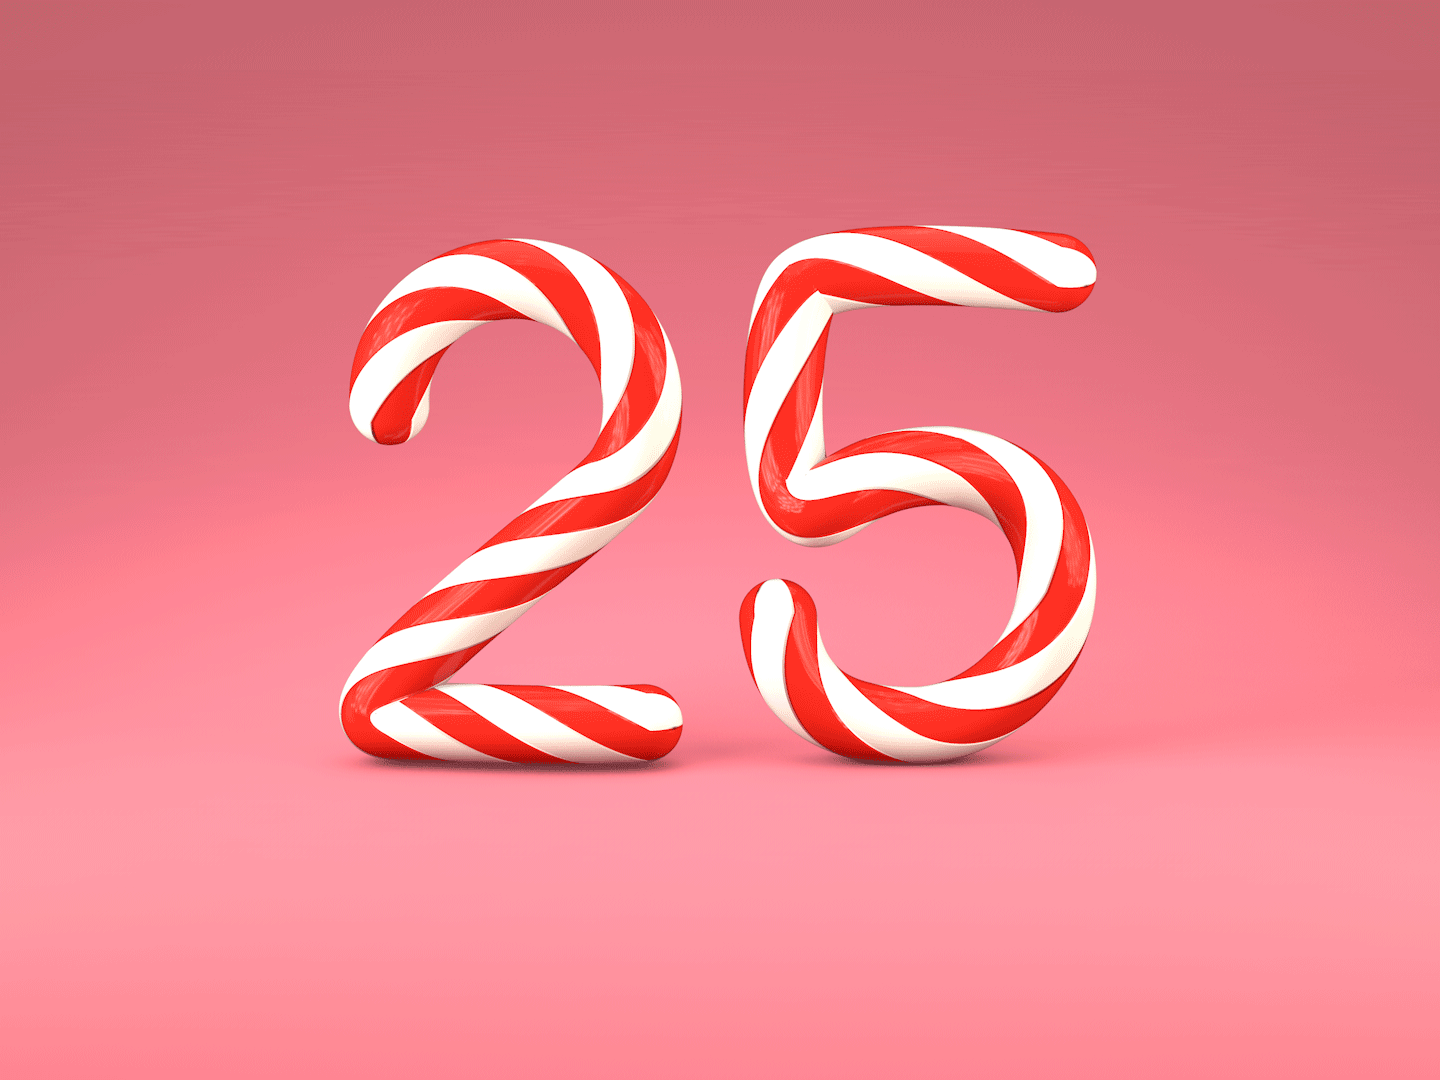 25s